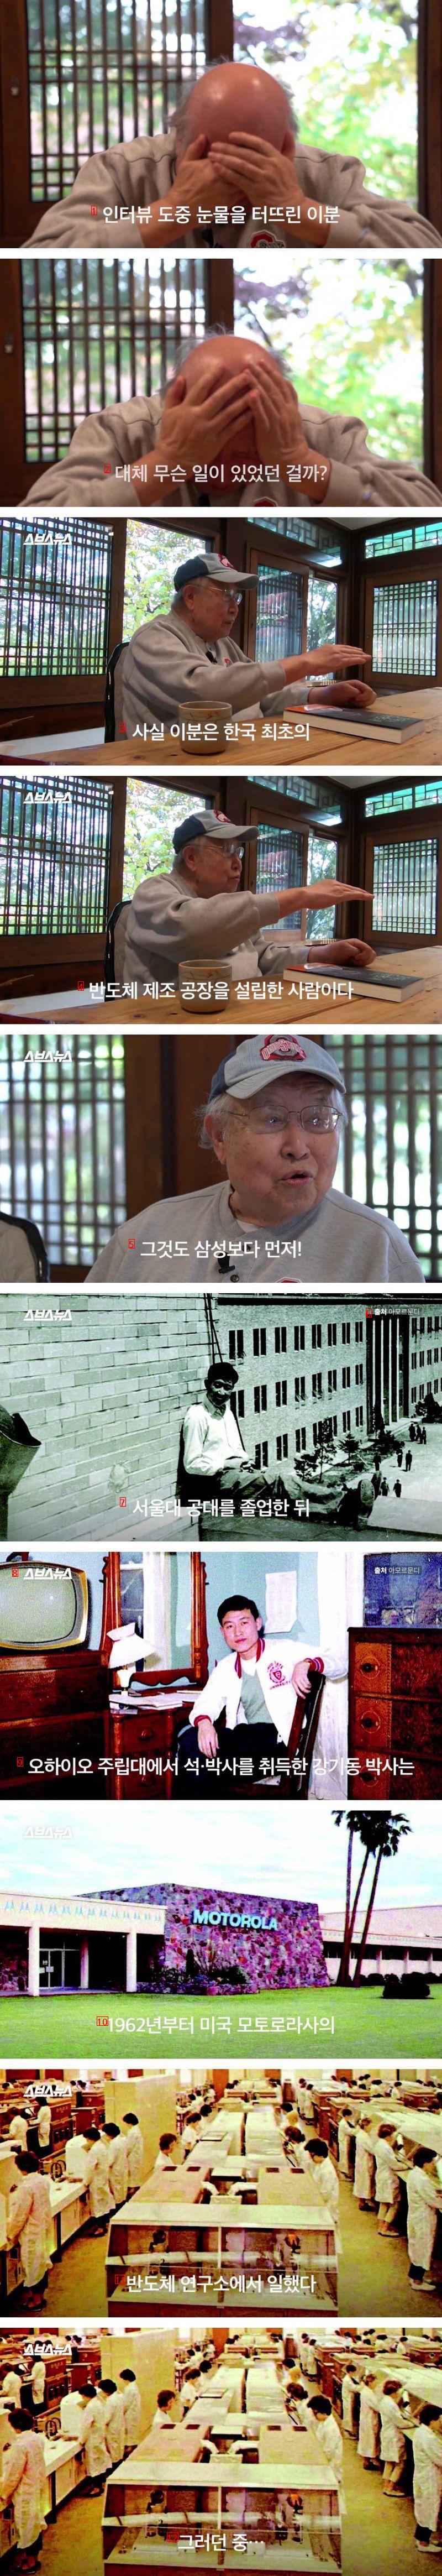 한국 최초 반도체 만든 사람의 이야기